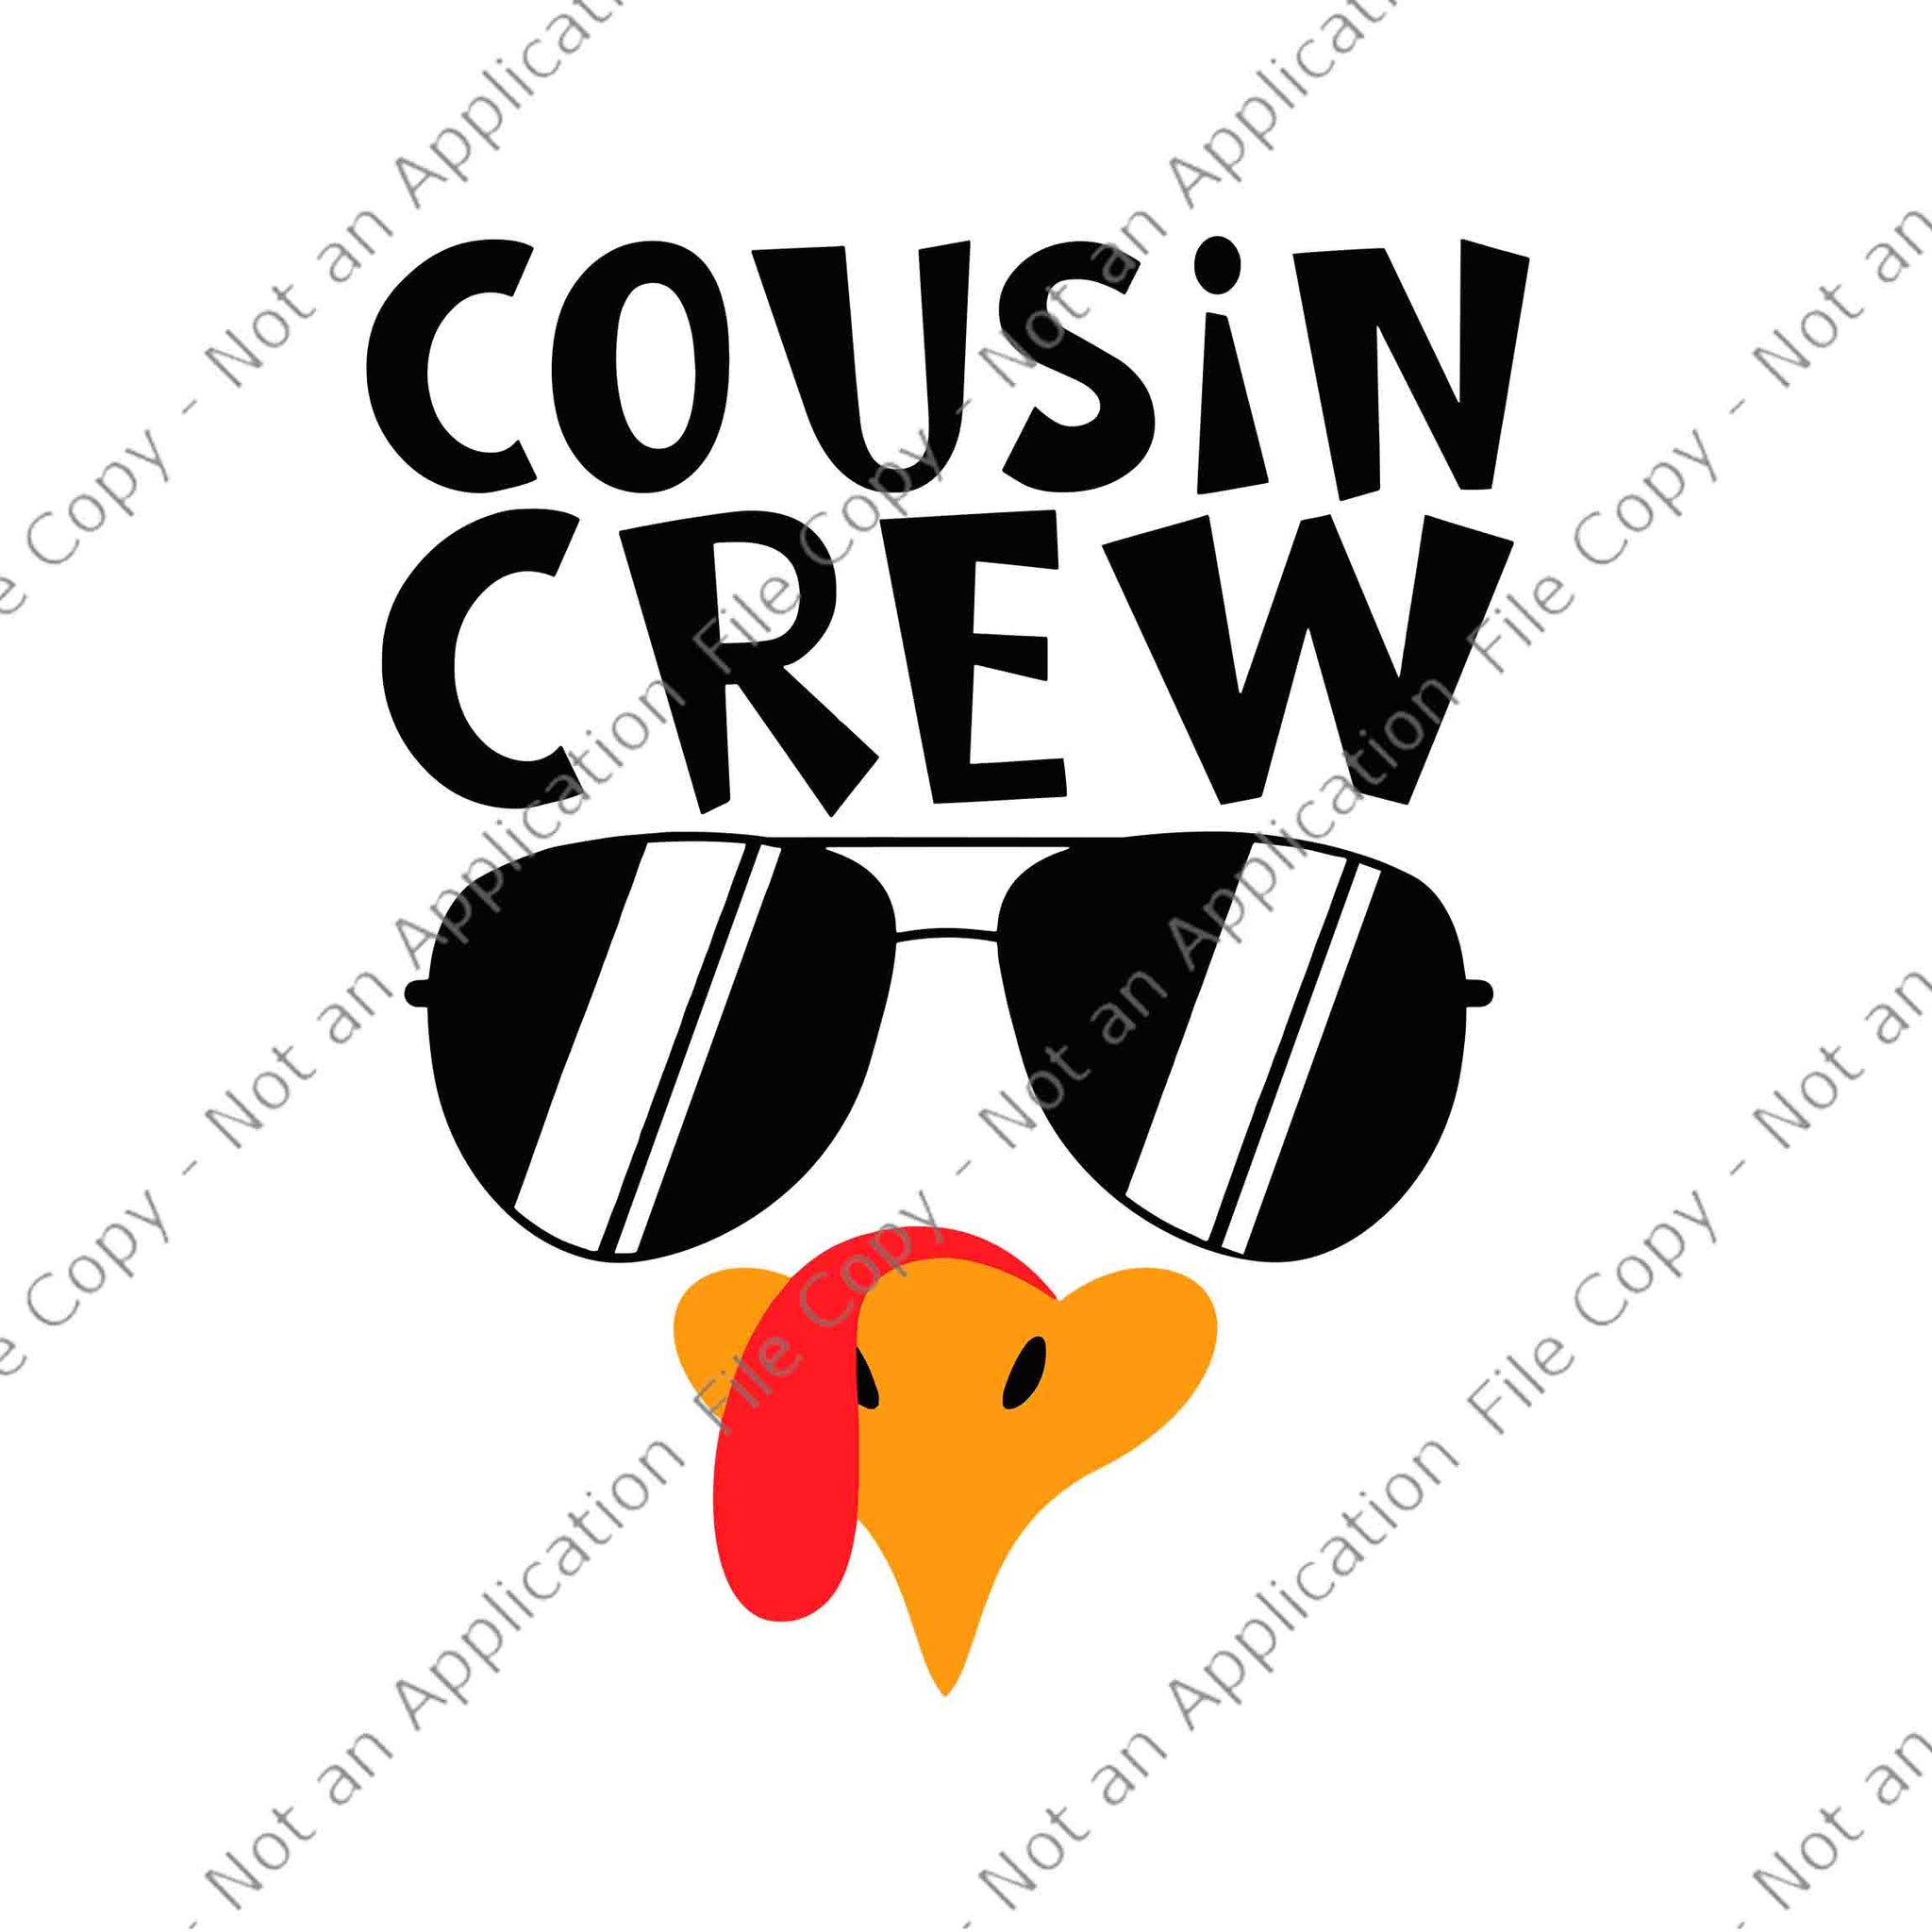 Cousin Crew Turkey Thanksgiving Svg, Turkey Cousin Crew Svg, Cousin Crew Svg, Thanksgiving Day Svg